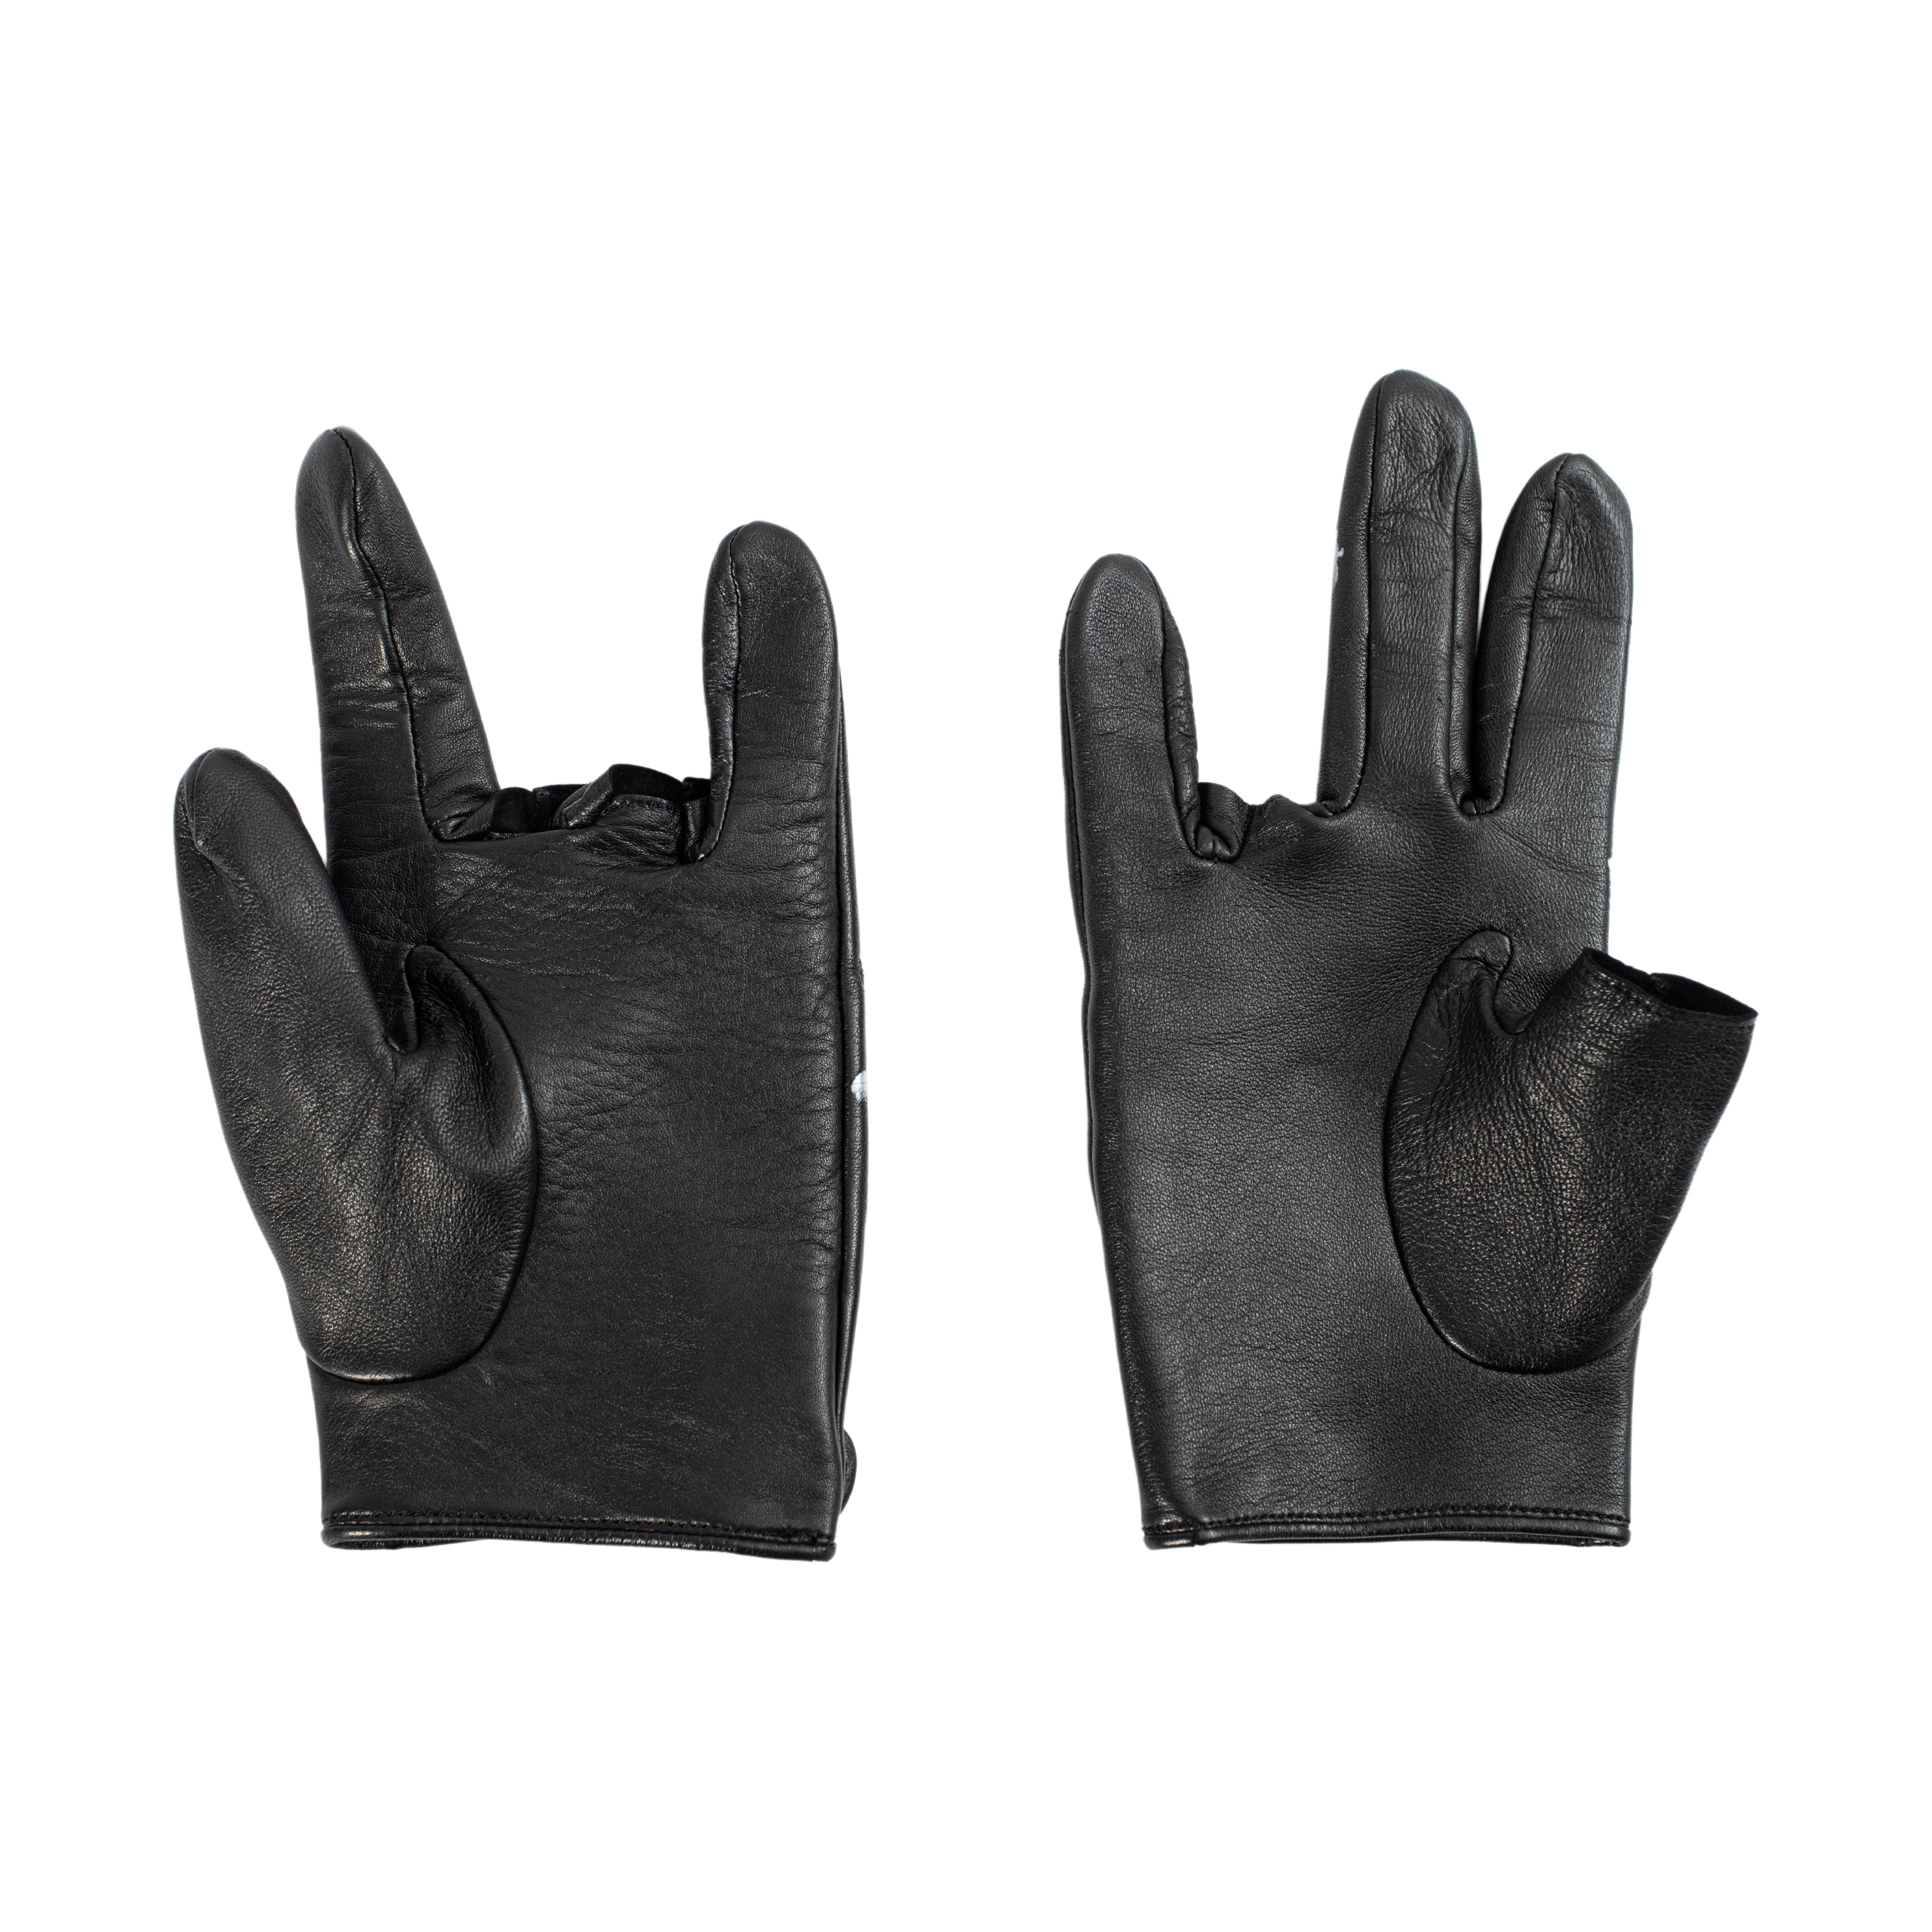 Кожаные перчатки с принтом Yohji Yamamoto HX-W04-774-1, размер 3 - фото 5